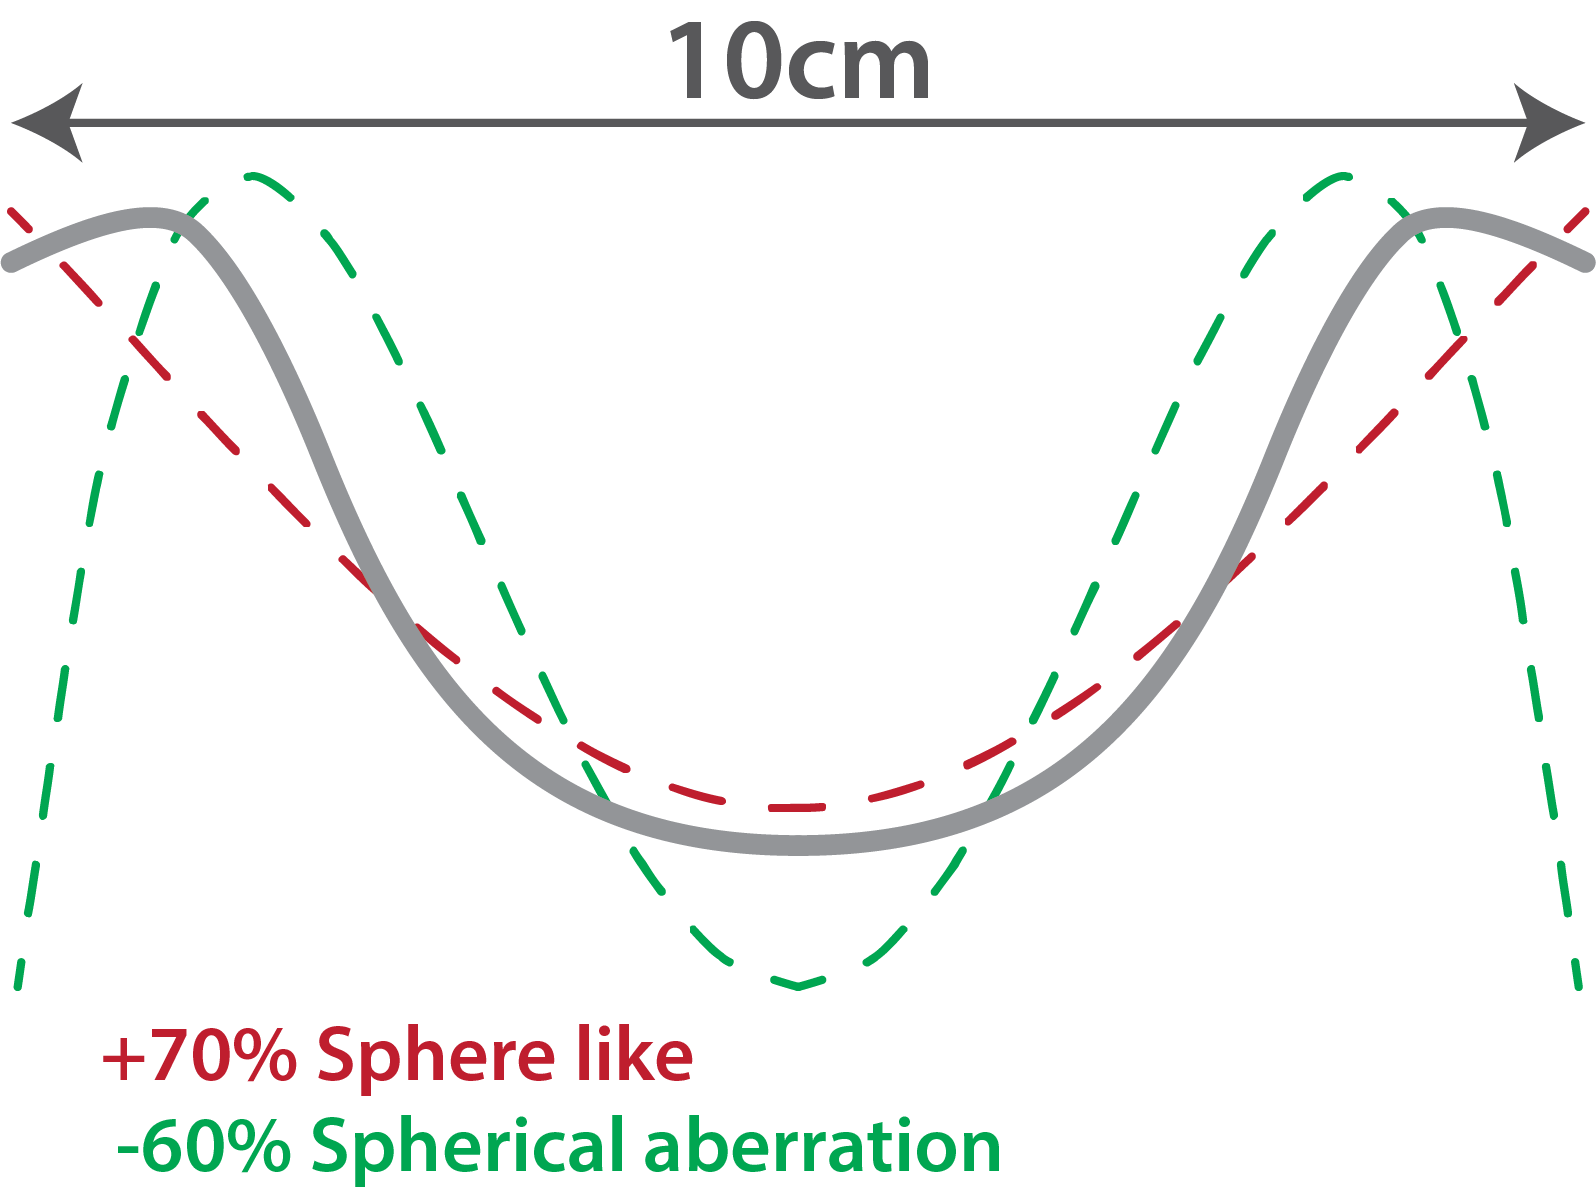 Spherical-aberration-bowl-comparison-10cm.png